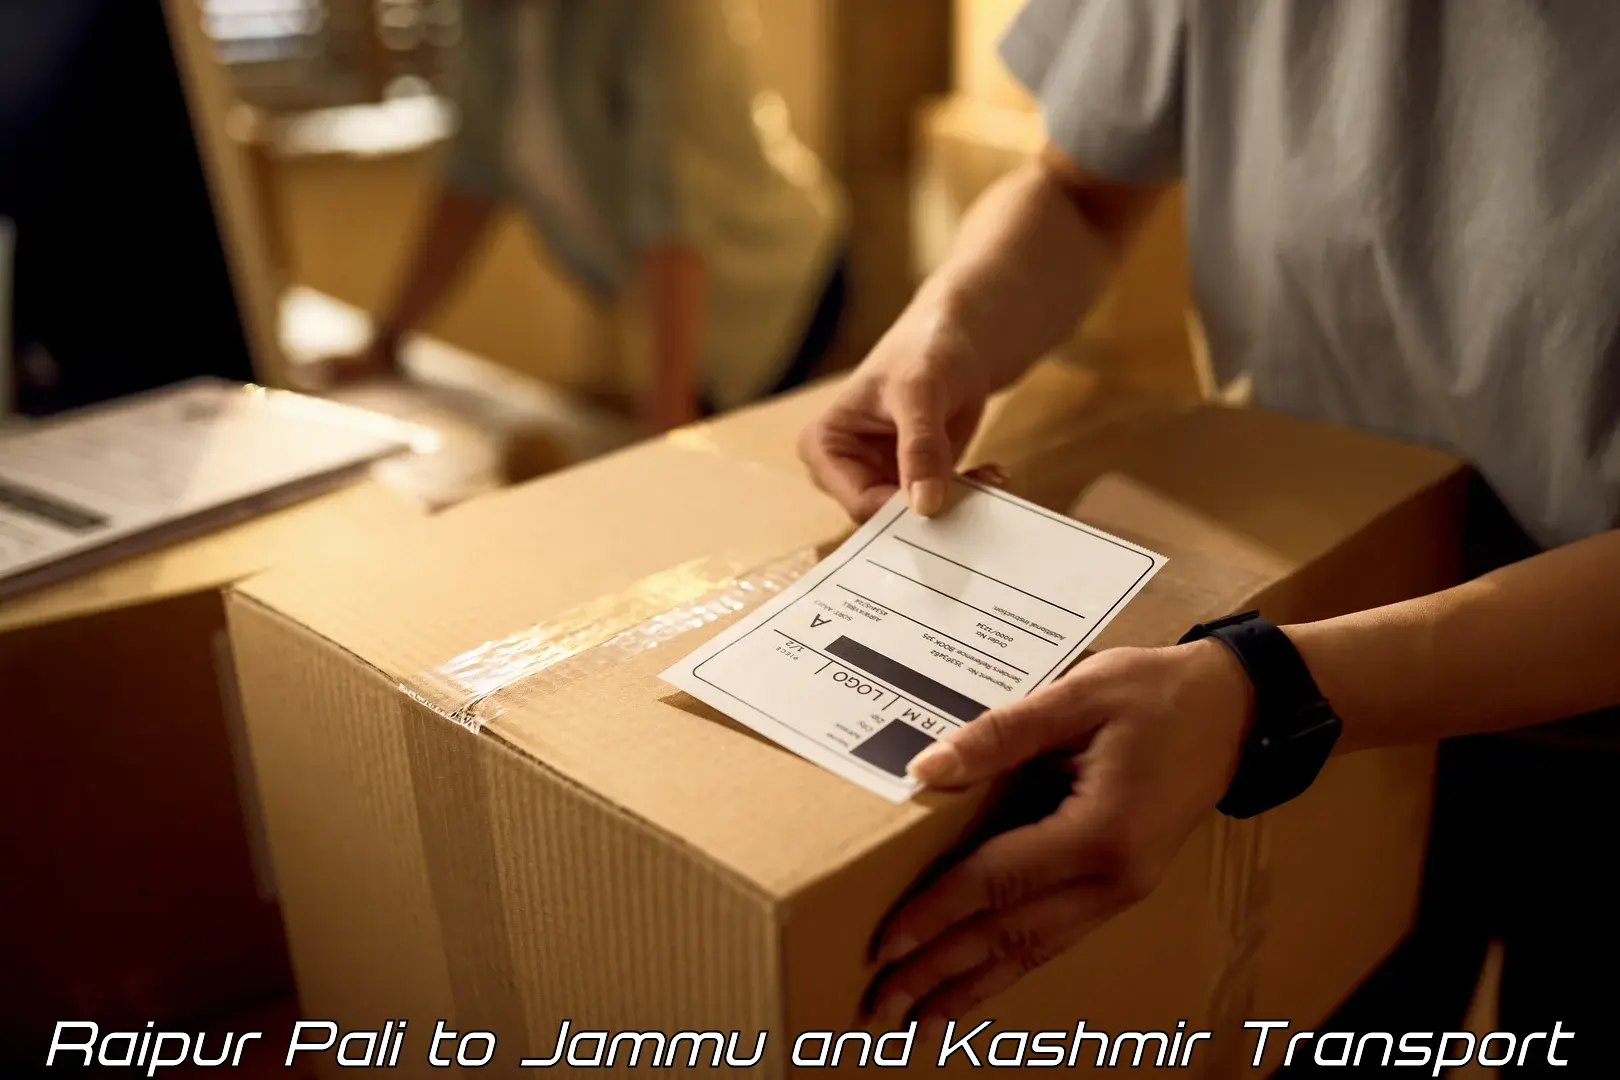 Bike shipping service Raipur Pali to Jammu and Kashmir